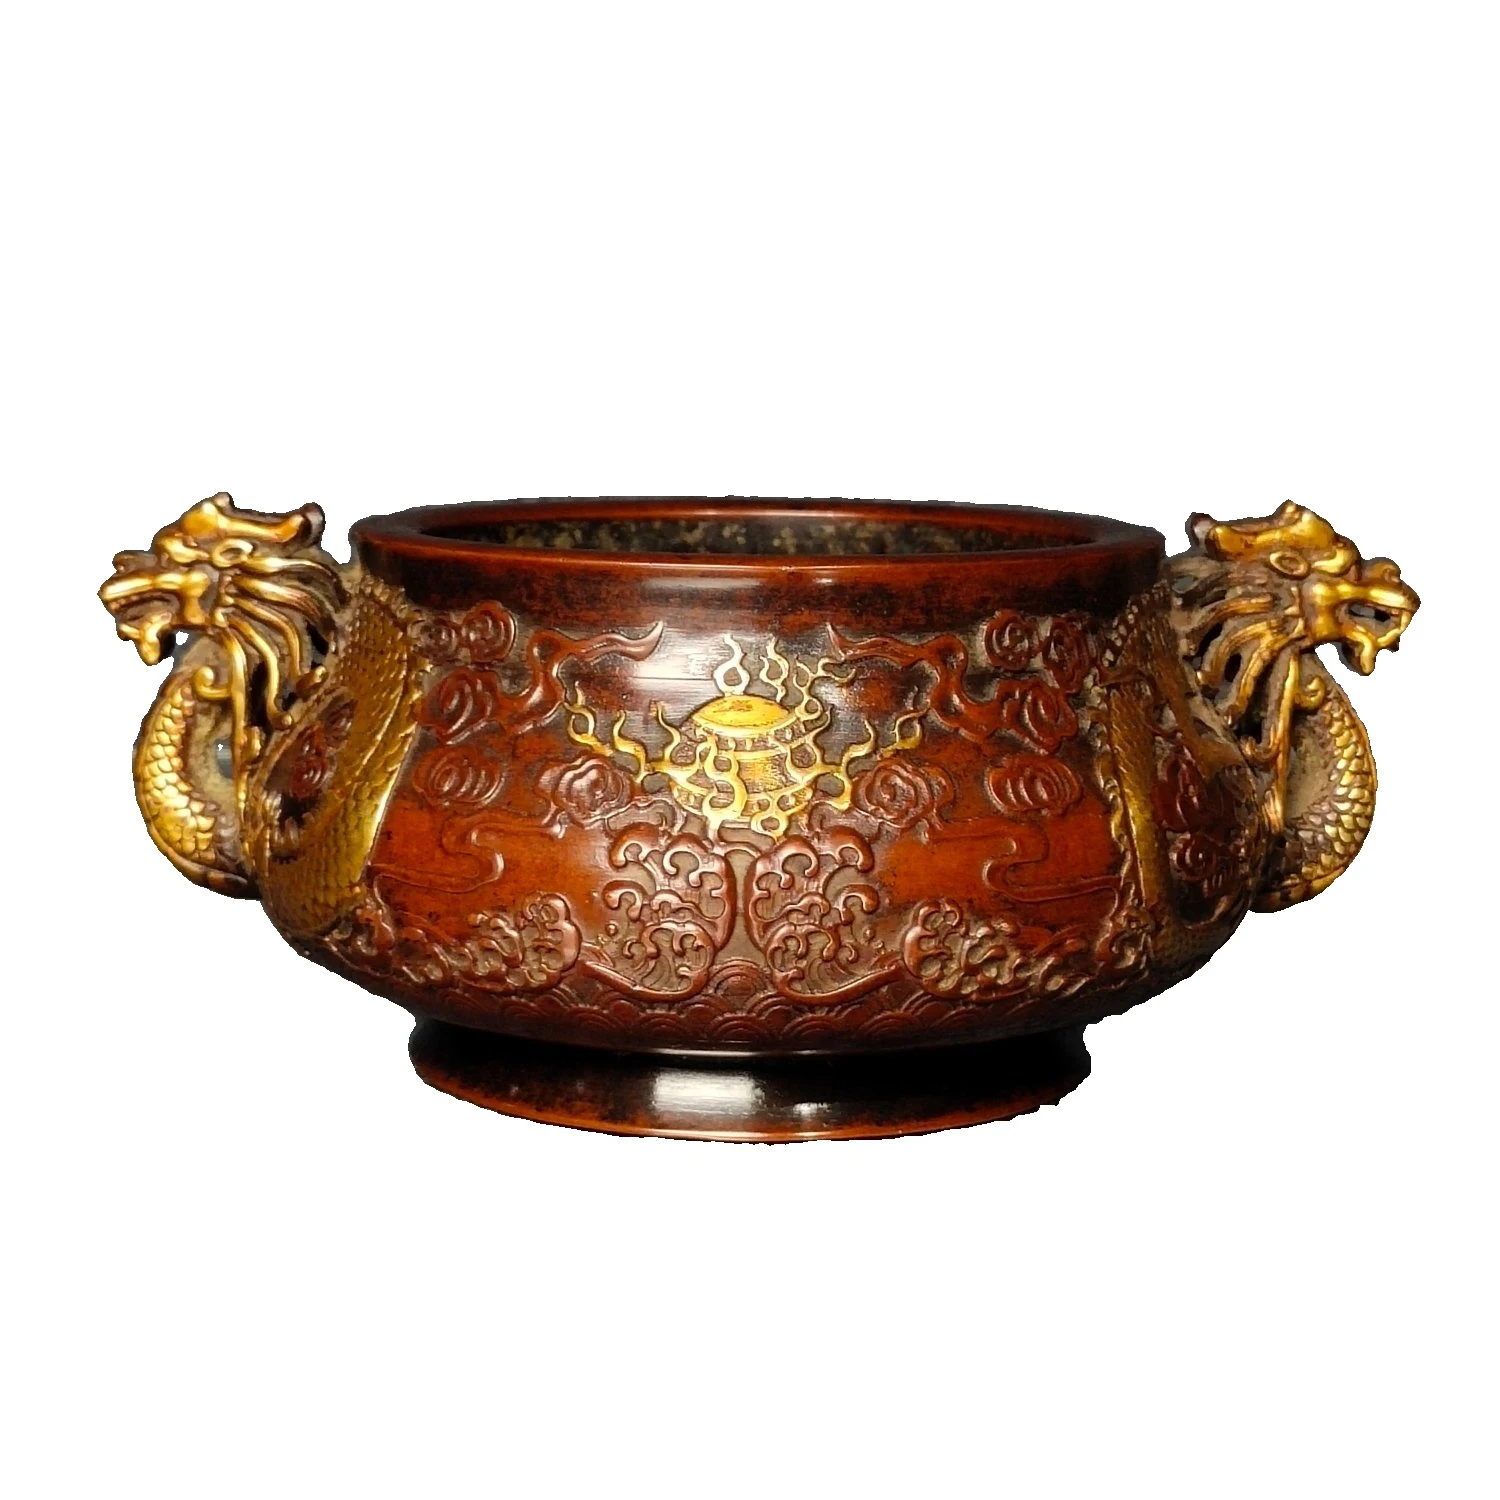 

Laojunlu позолоченная бронзовая горелка для благовоний с двумя драконами, играющая с жемчугом, Античная бронзовая коллекция шедевров